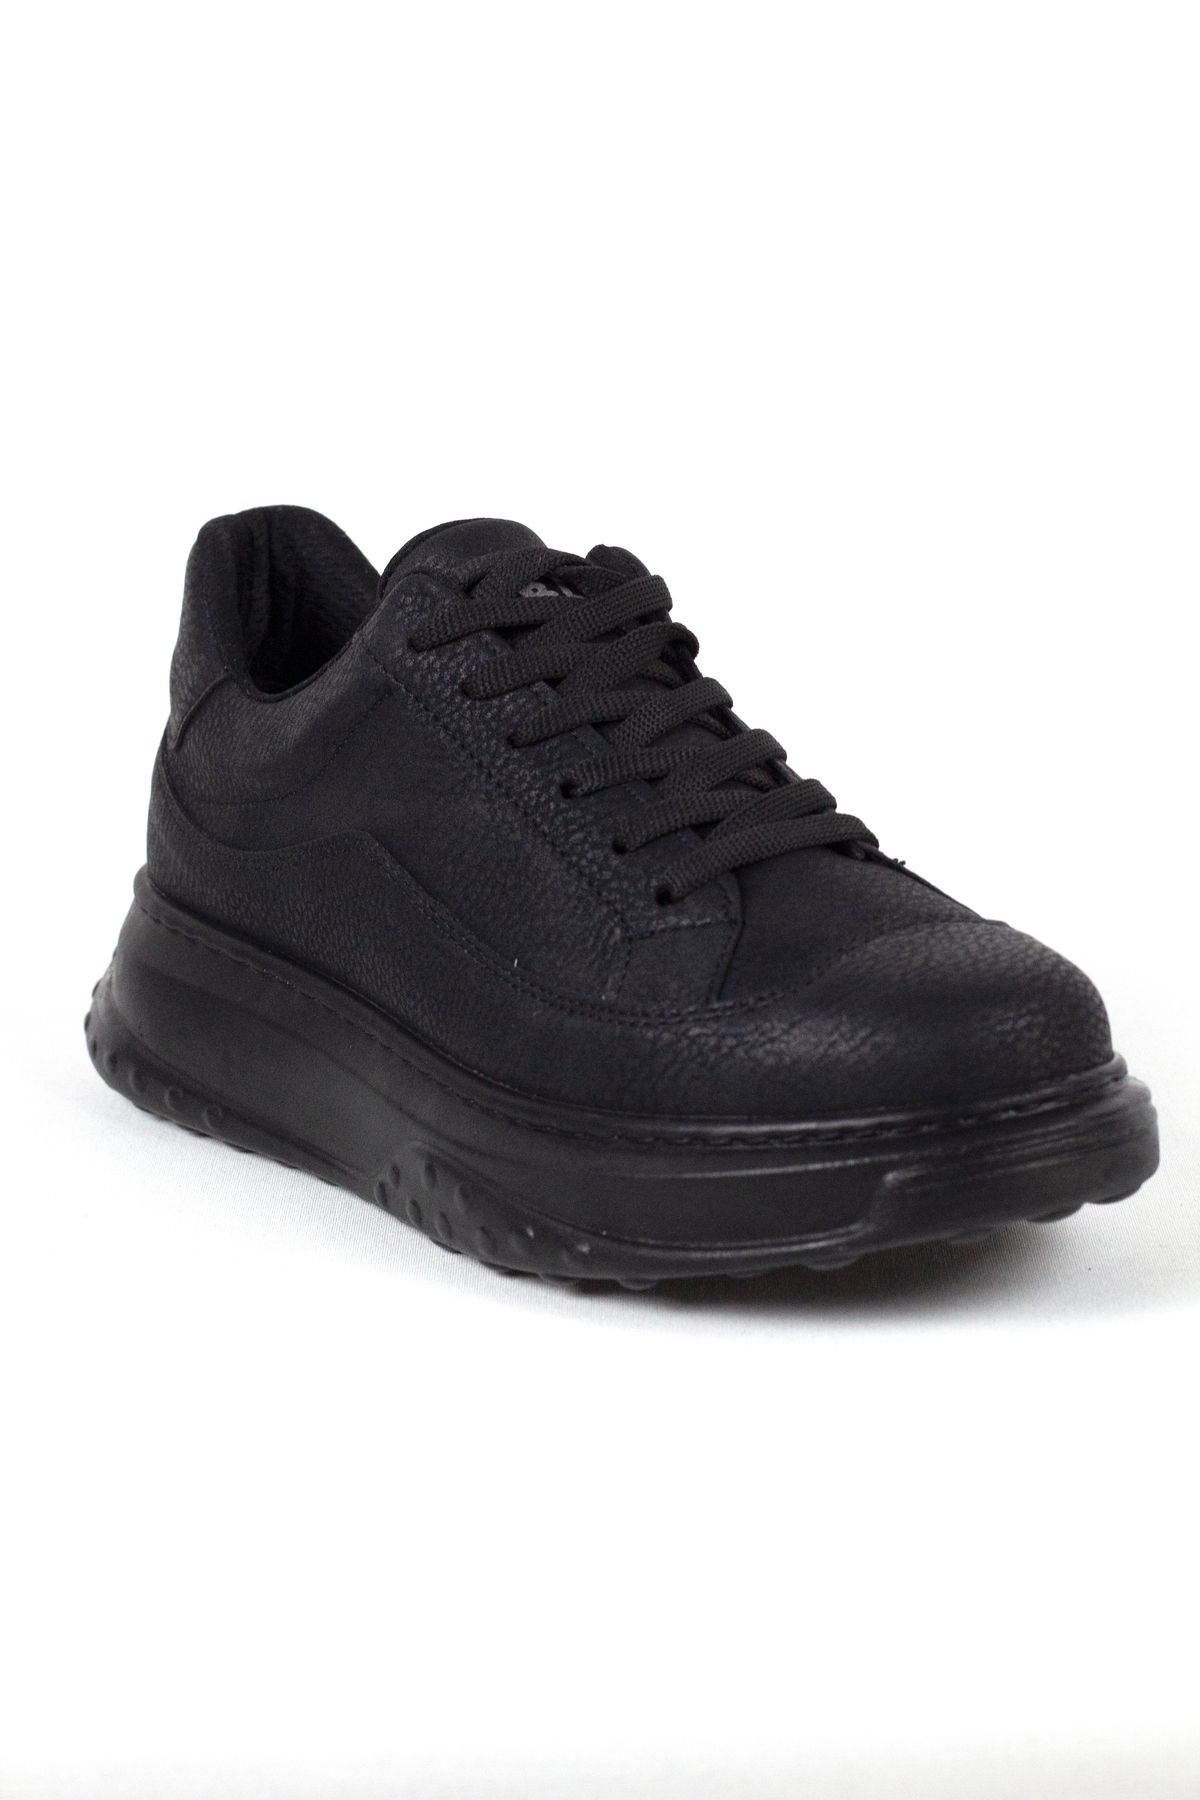 Mida Shoes Siyah Erkek Spor Günlük Ayakkabı